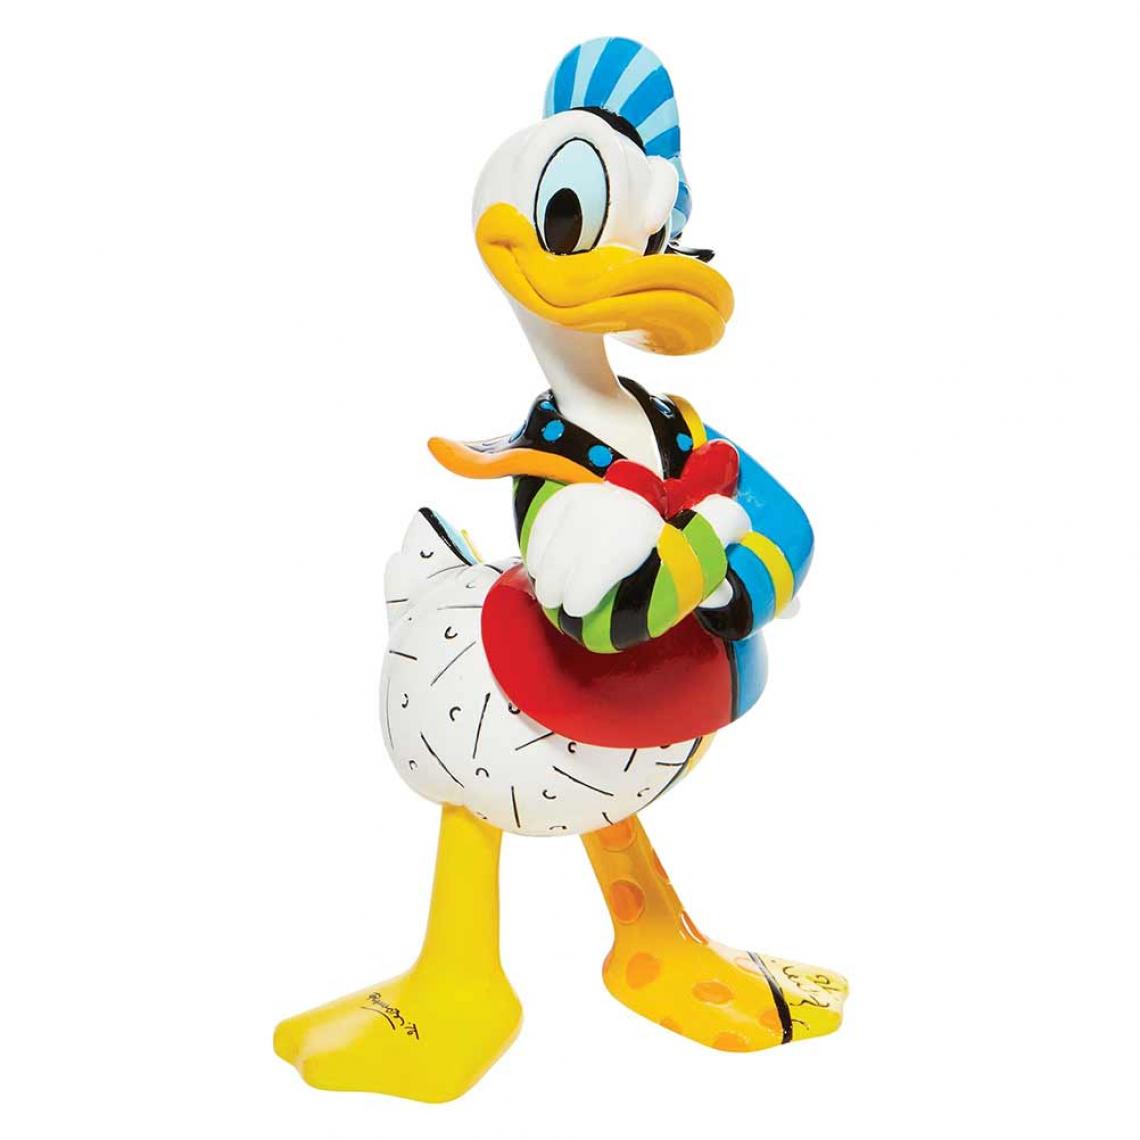 Enesco - Donald Duck Figurine Collection by Roméro Britto - Petite déco d'exterieur